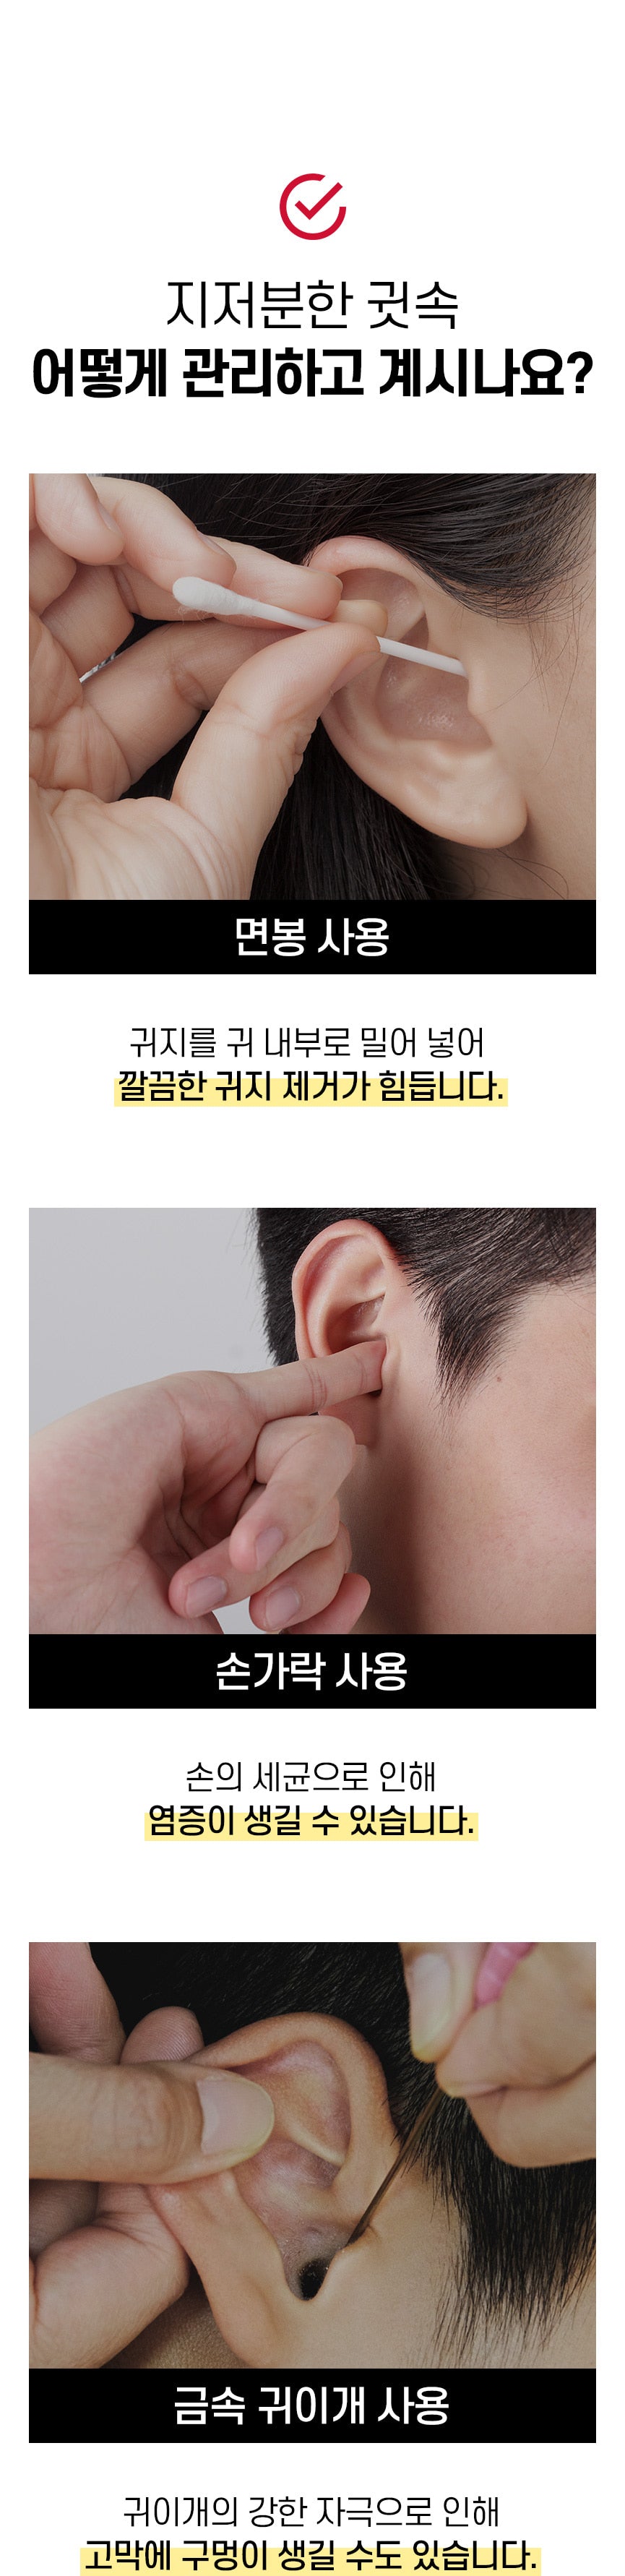 Self ear pick desc 10